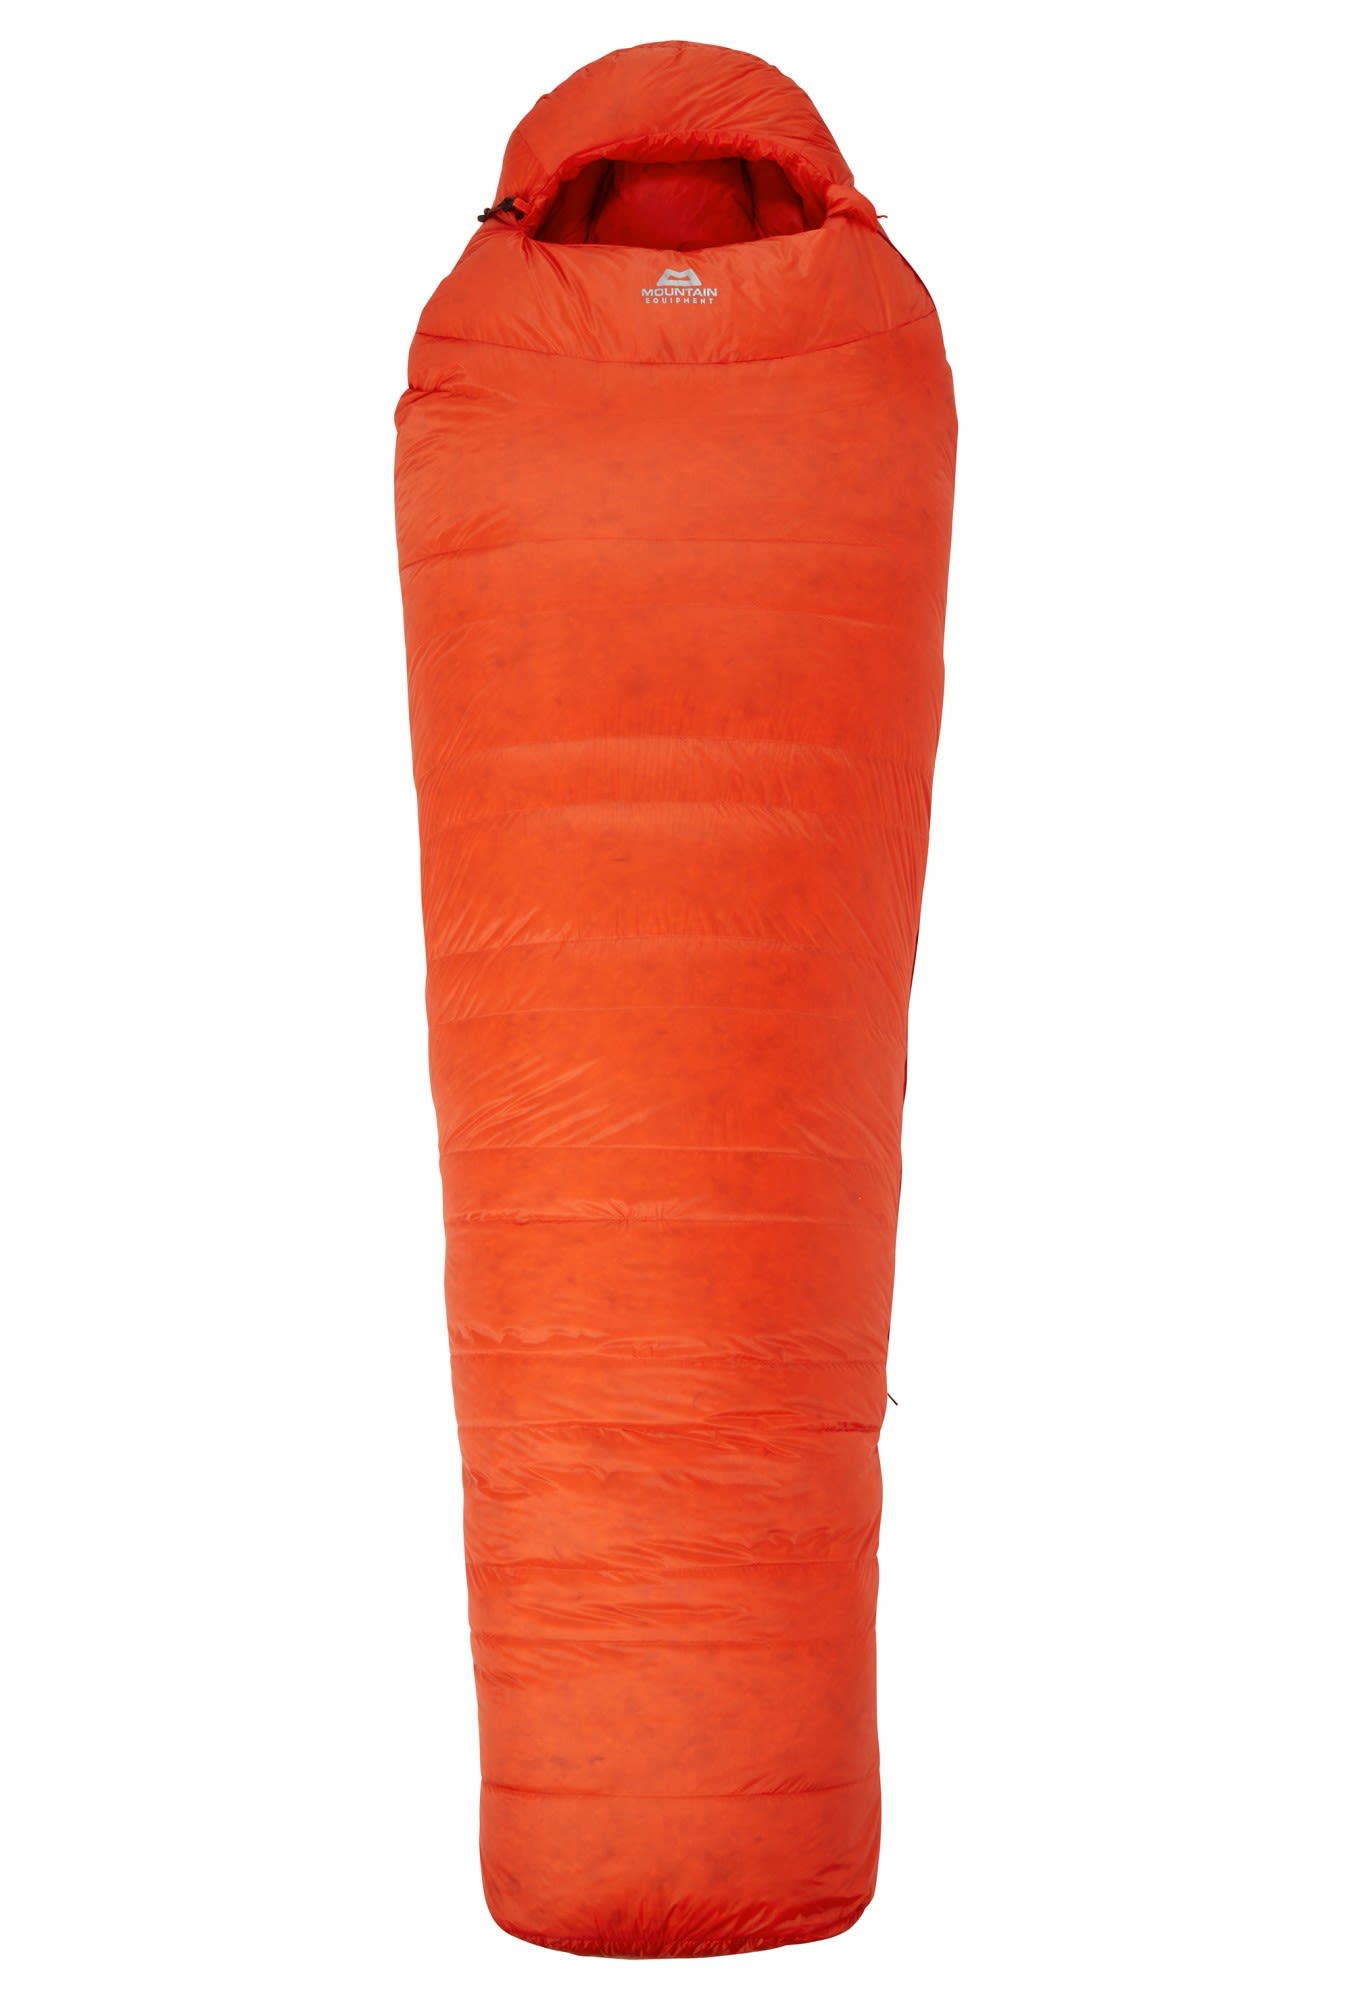 Mountain Equipment Xeros Regular Orange | Größe 190 cm - RV links |  Daunensch